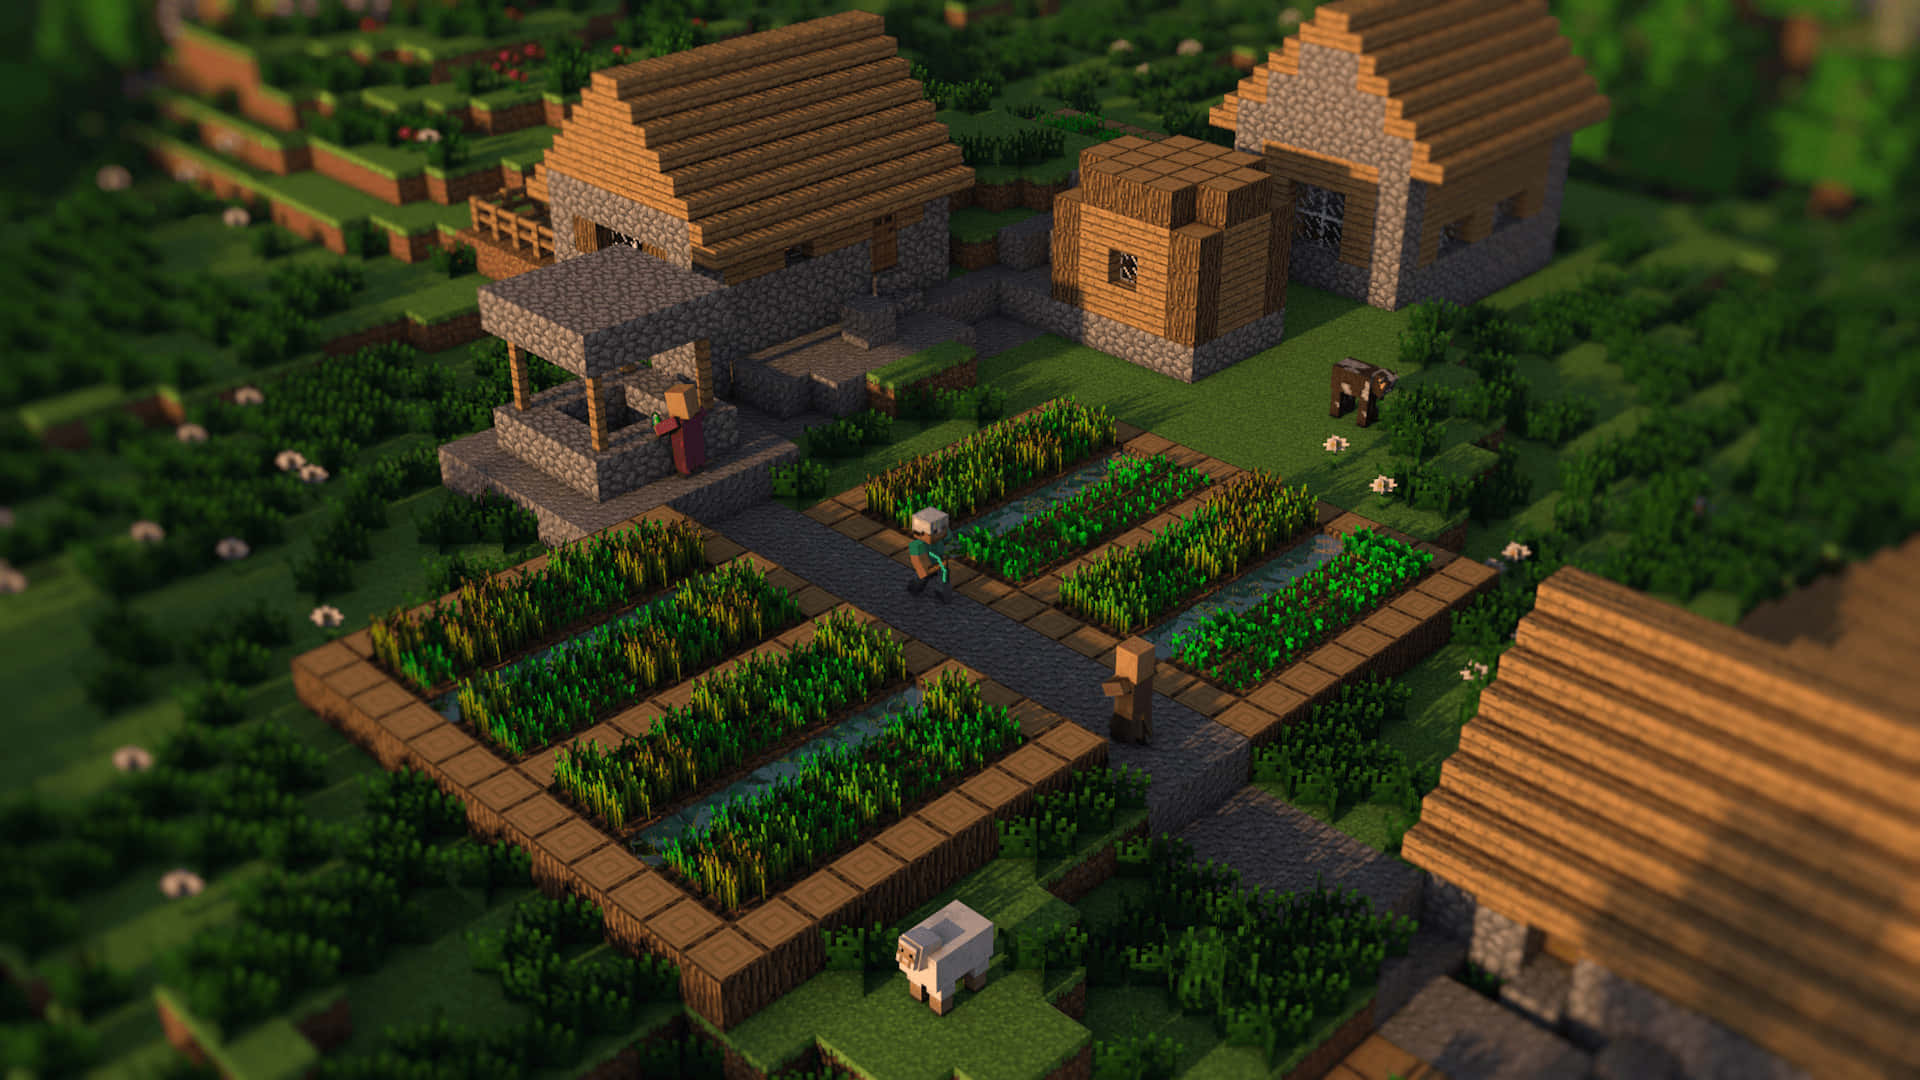 Picturesque Minecraft Village with Stunning Views Wallpaper